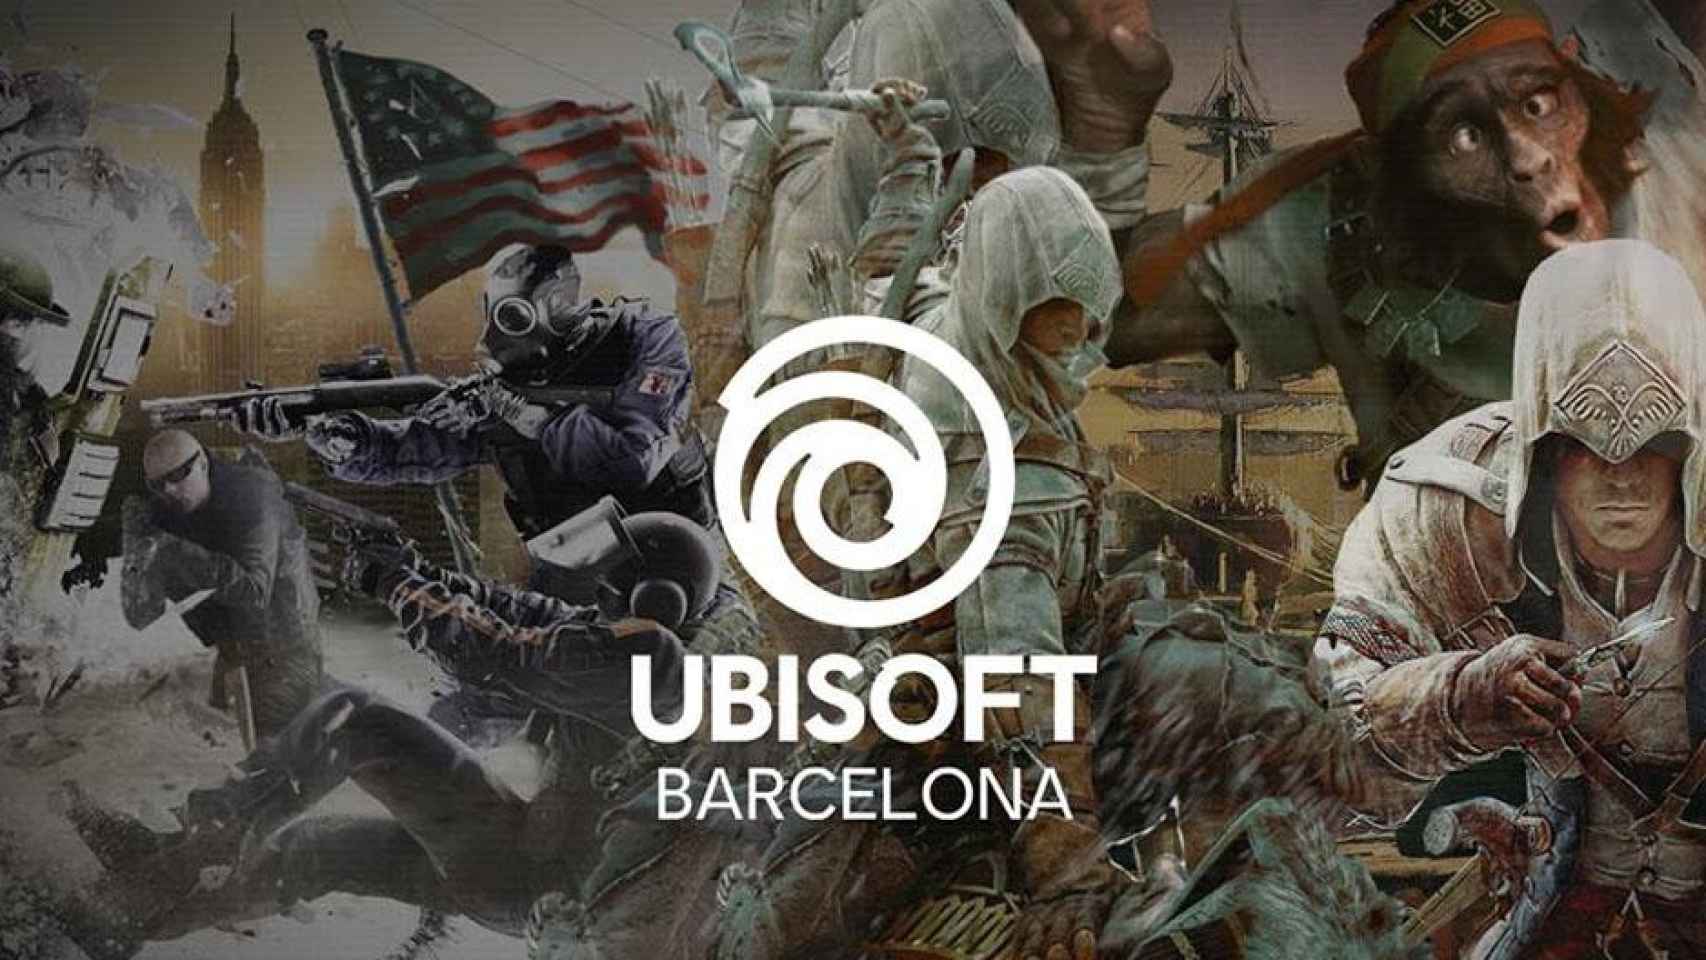 Imagen promocional de juegos en los que ha trabajado Ubisoft Barcelona / UBISOFT BARCELONA